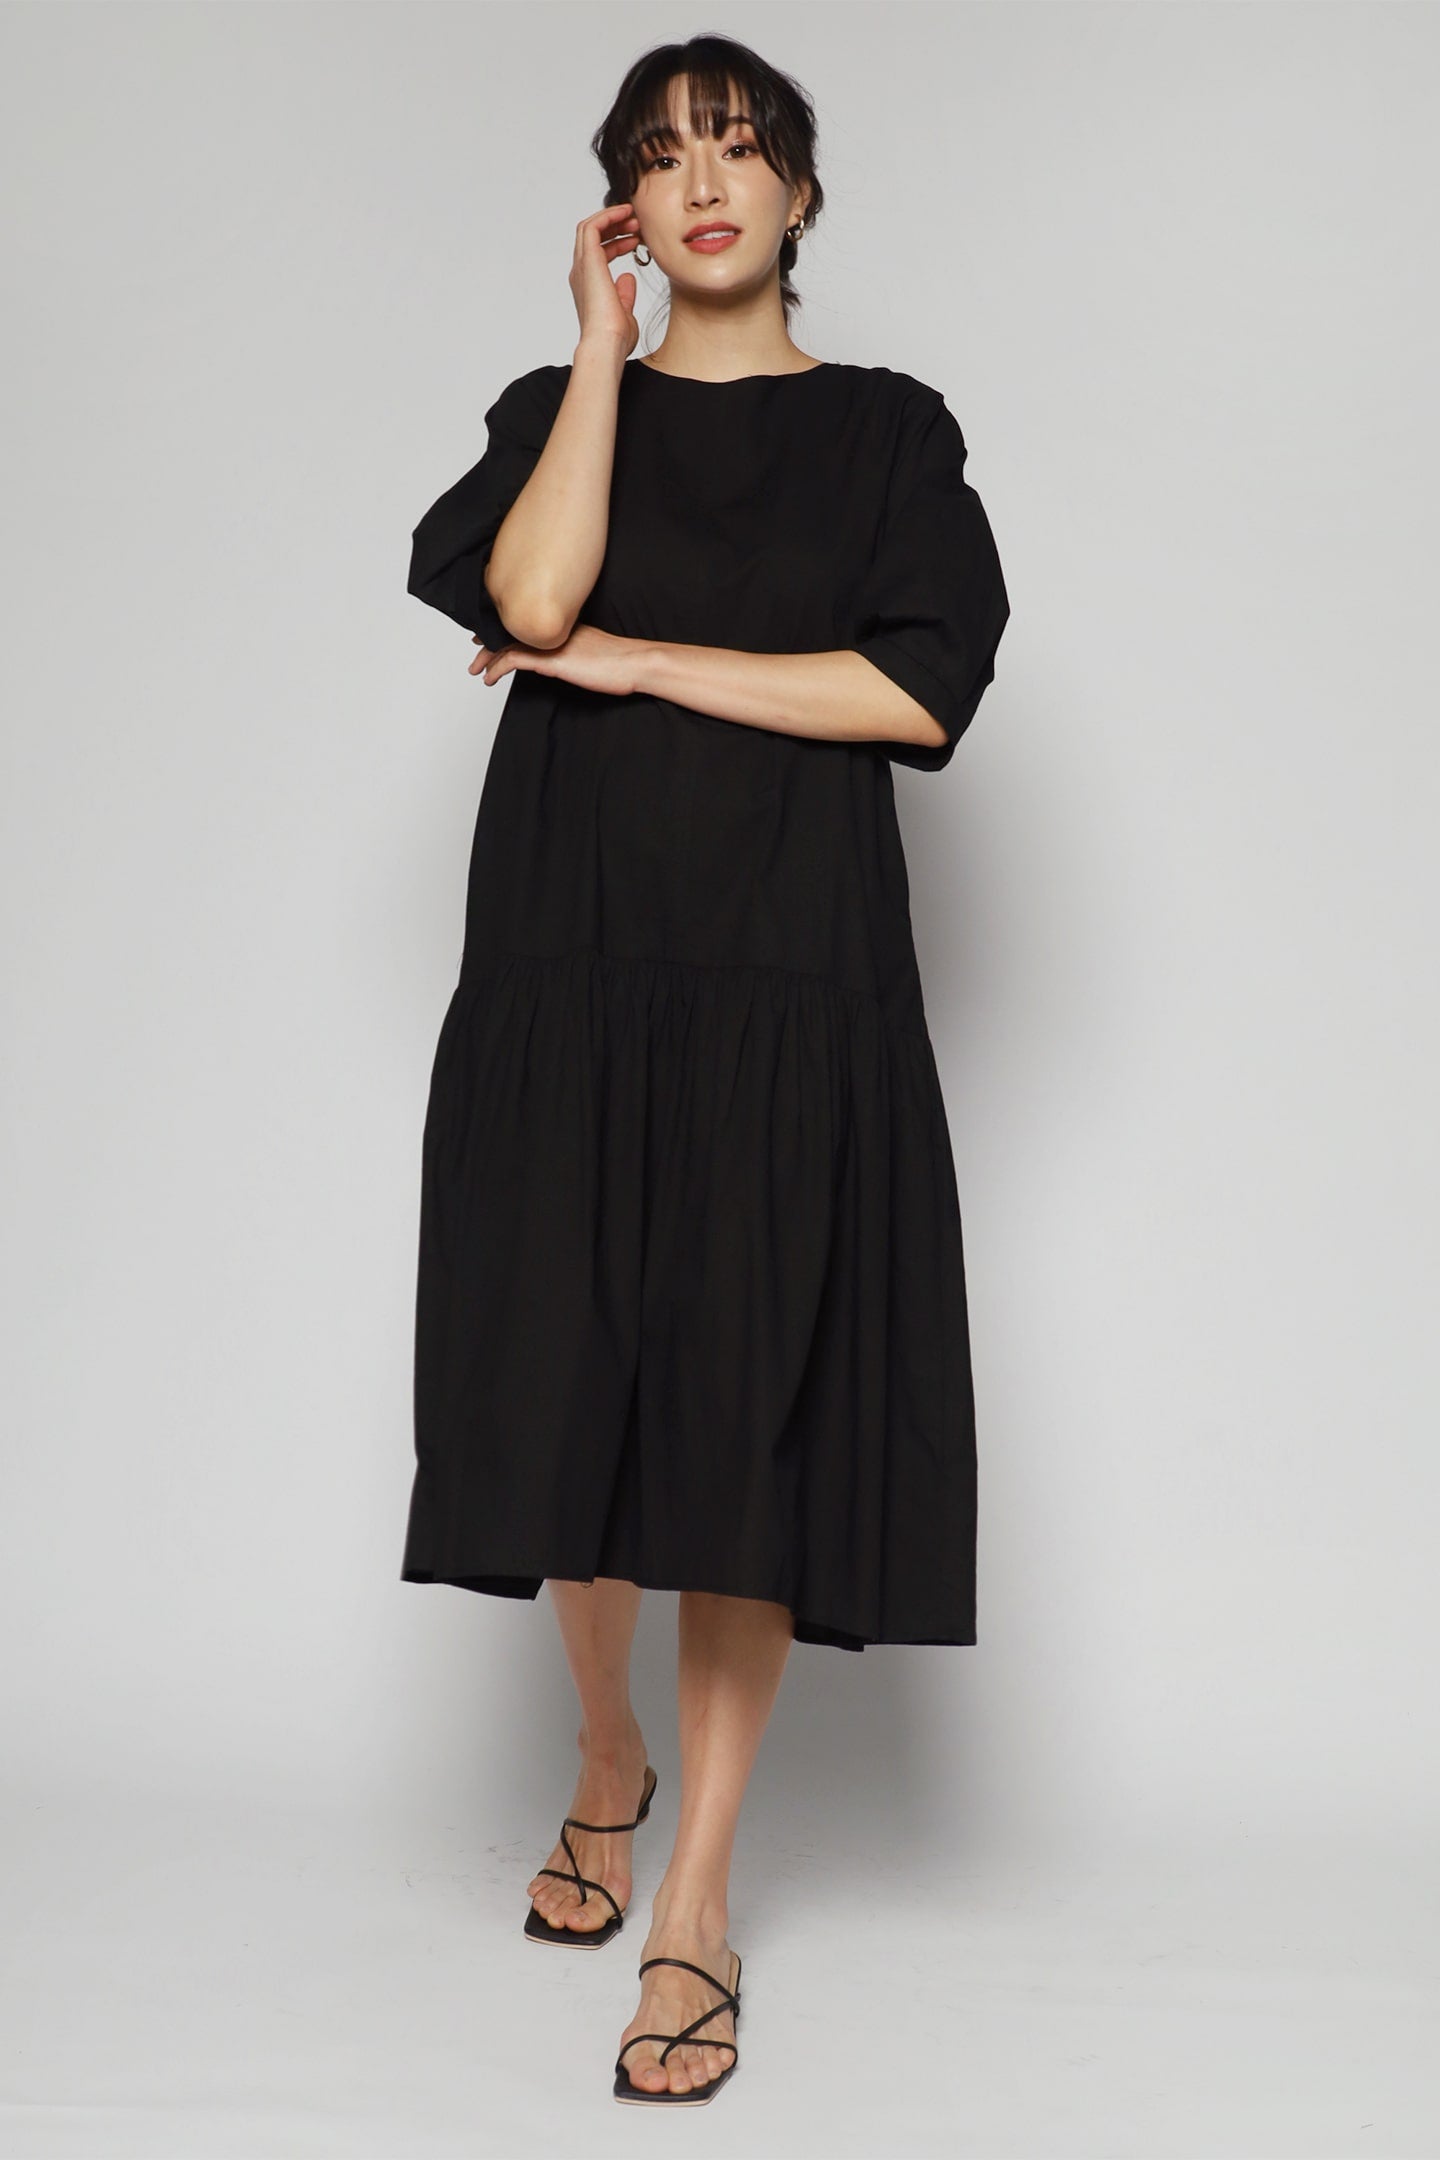 Alexia Dress in Black